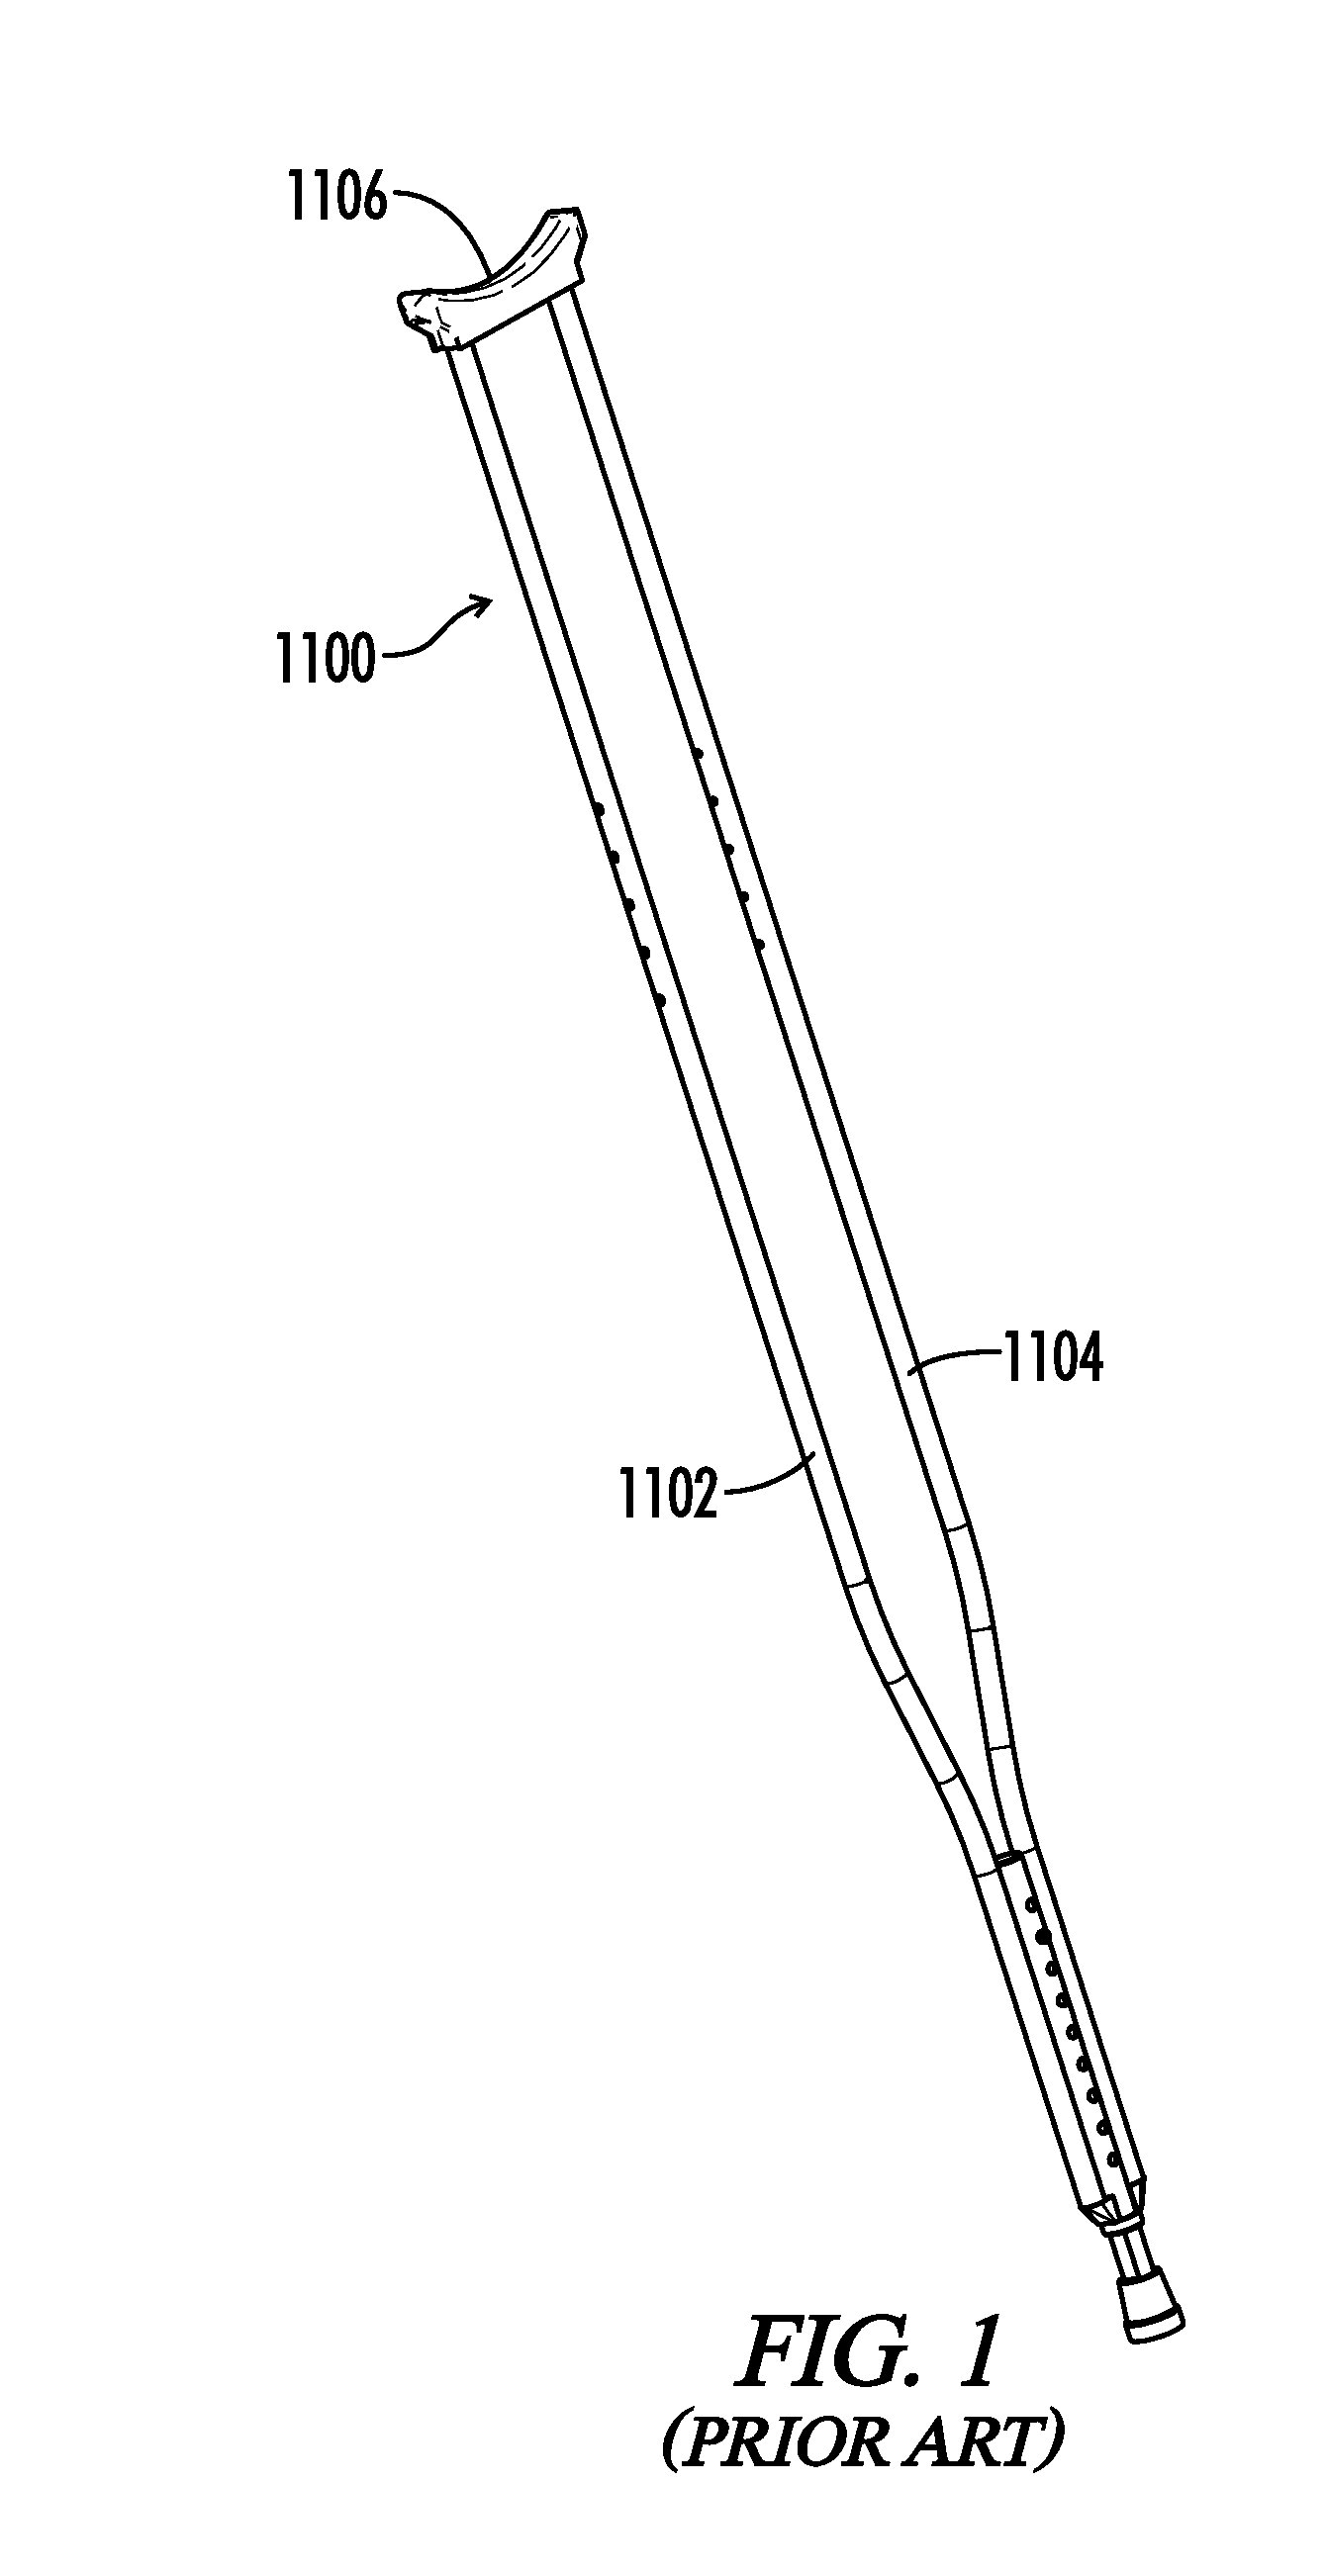 Ergonomic crutch grips